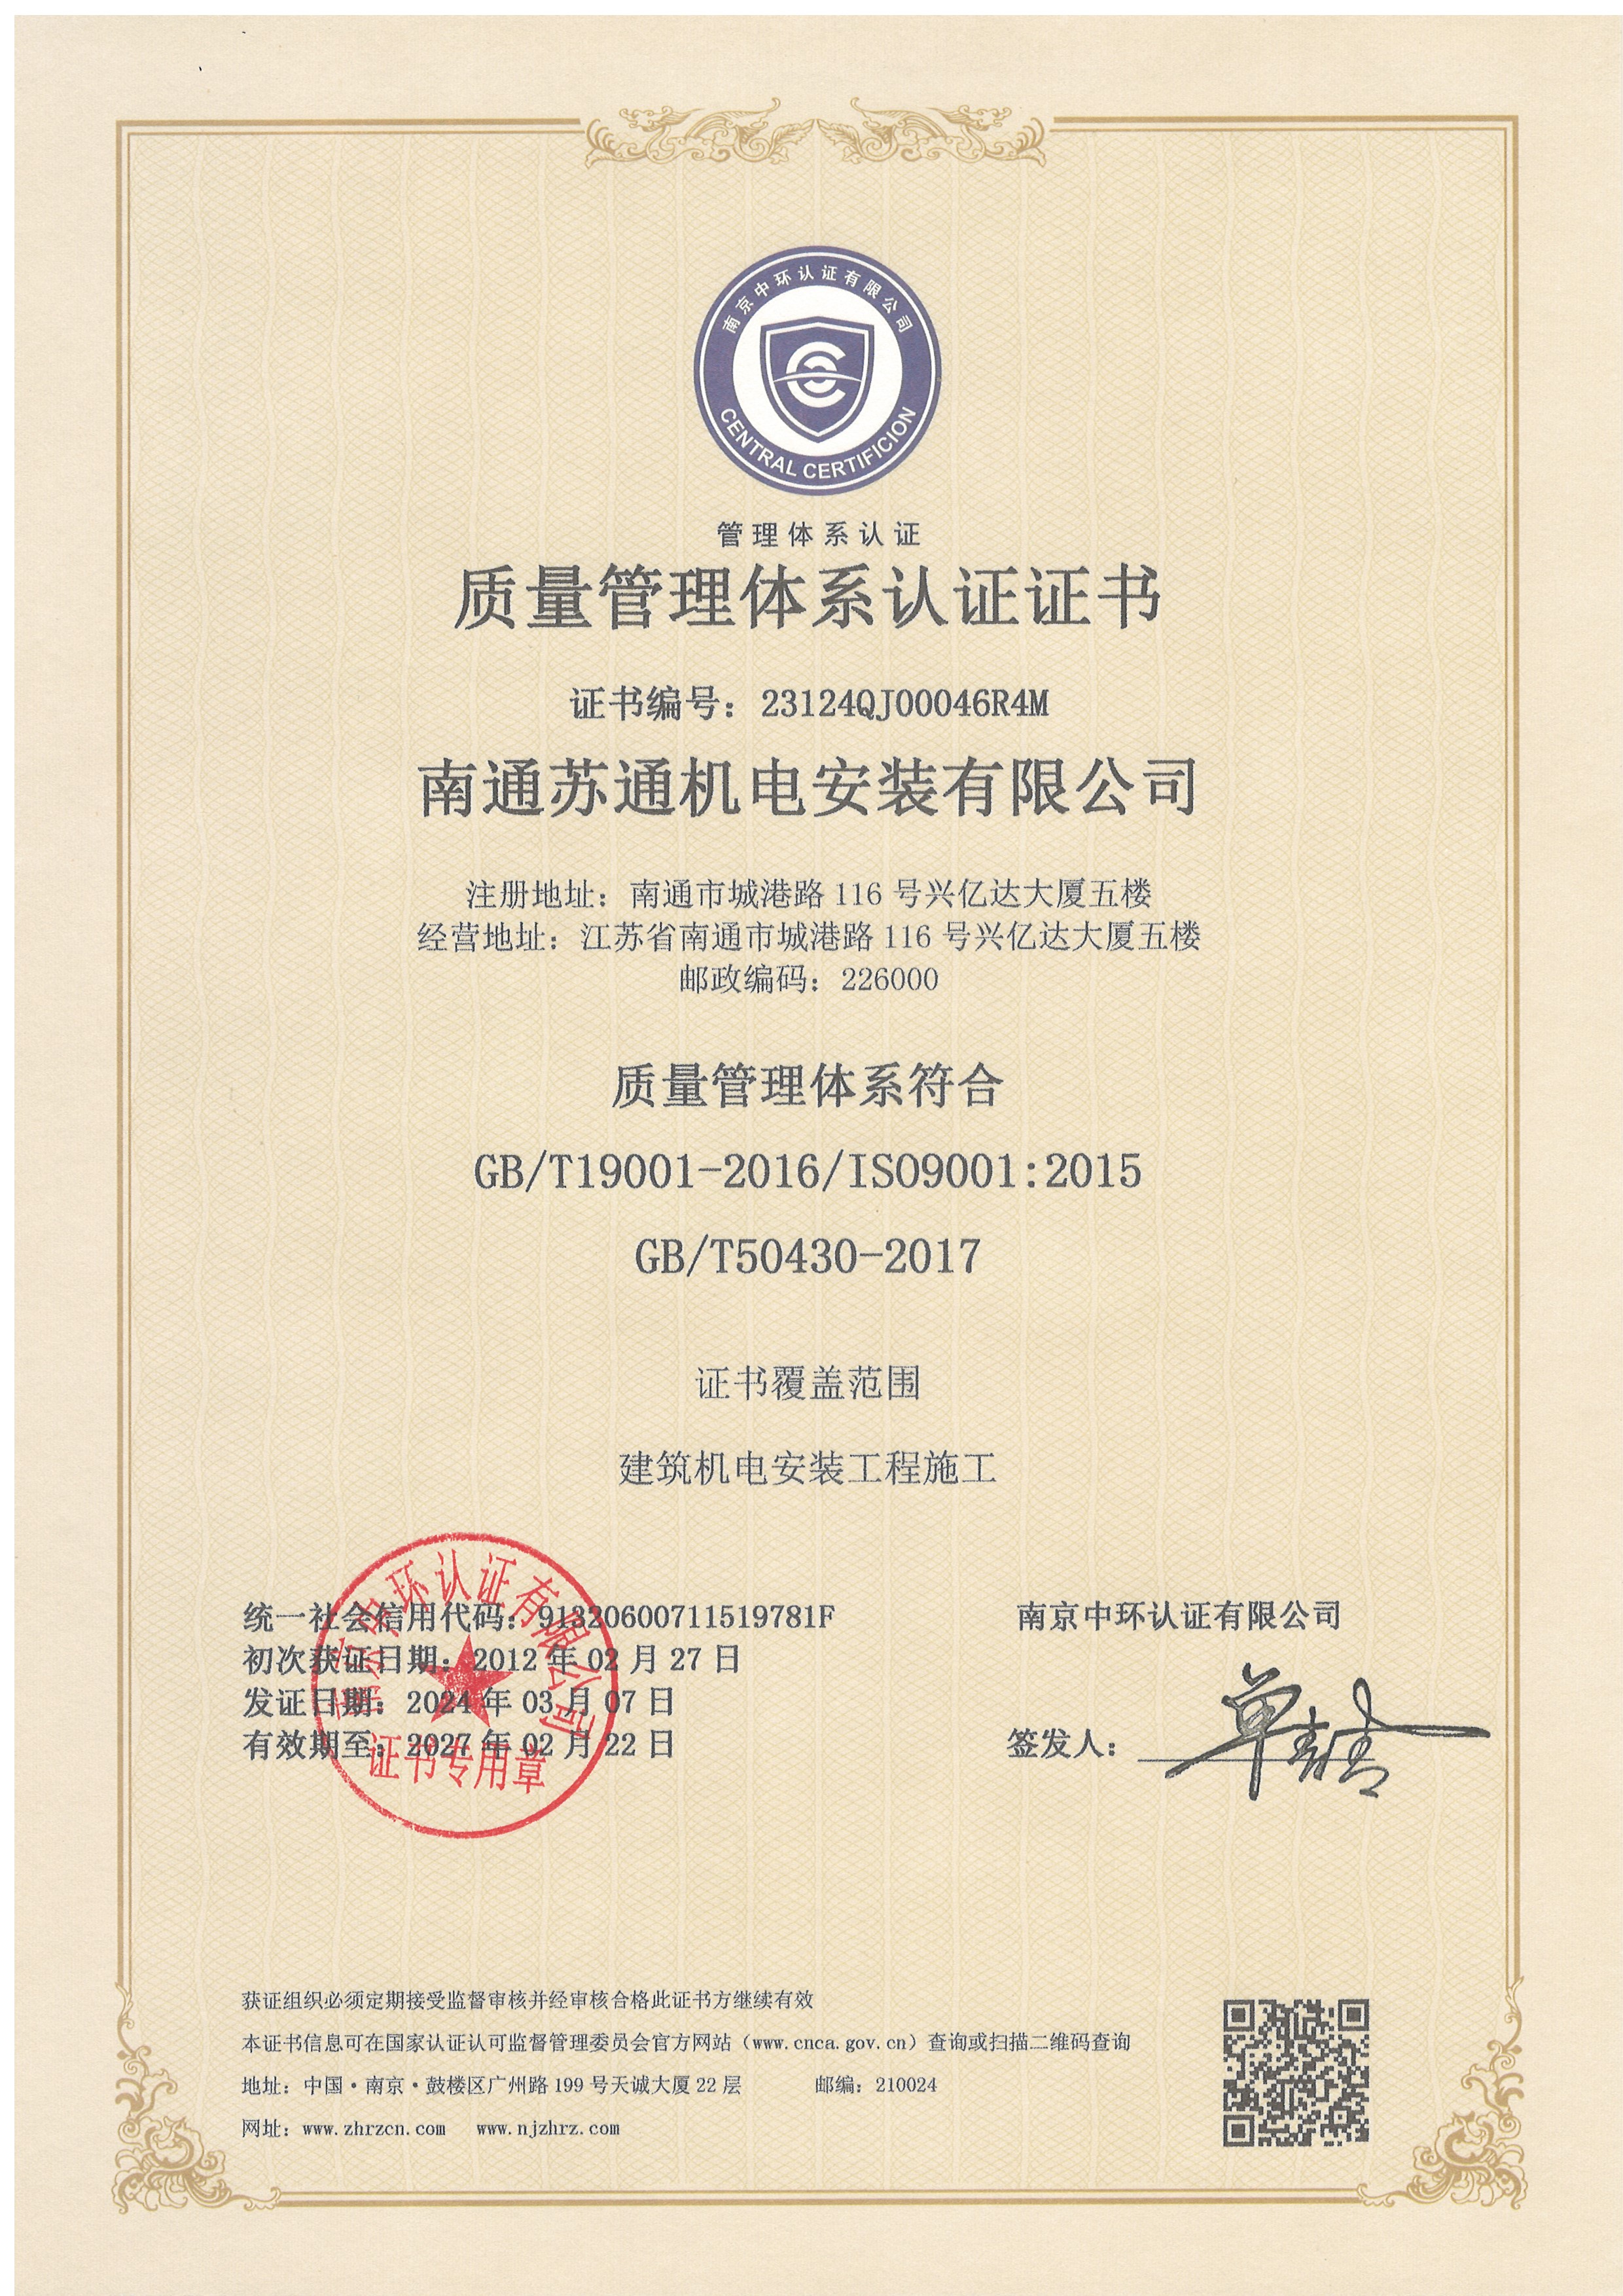 08、质量治理系统认证证书 